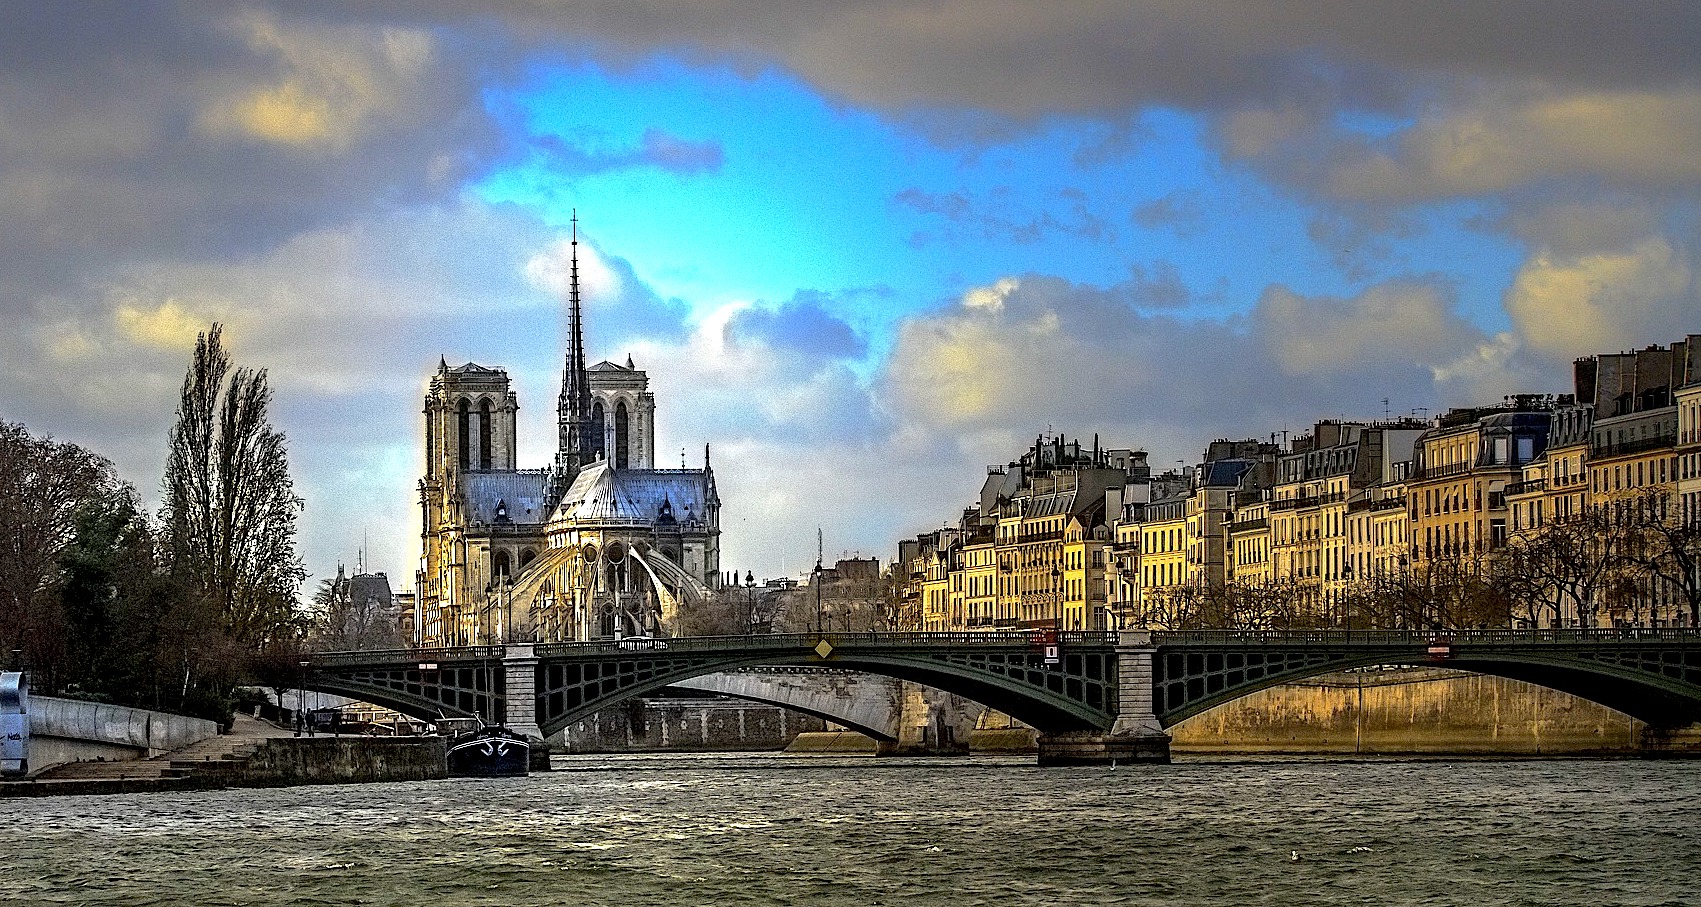 84 proc. Francuzów ocenia, że Francja jest krajem o kulturze i tradycji chrześcijańskiej – wynika z najnowszego sondażu przeprowadzonego przez instytut CSA dla francuskich mediów. 